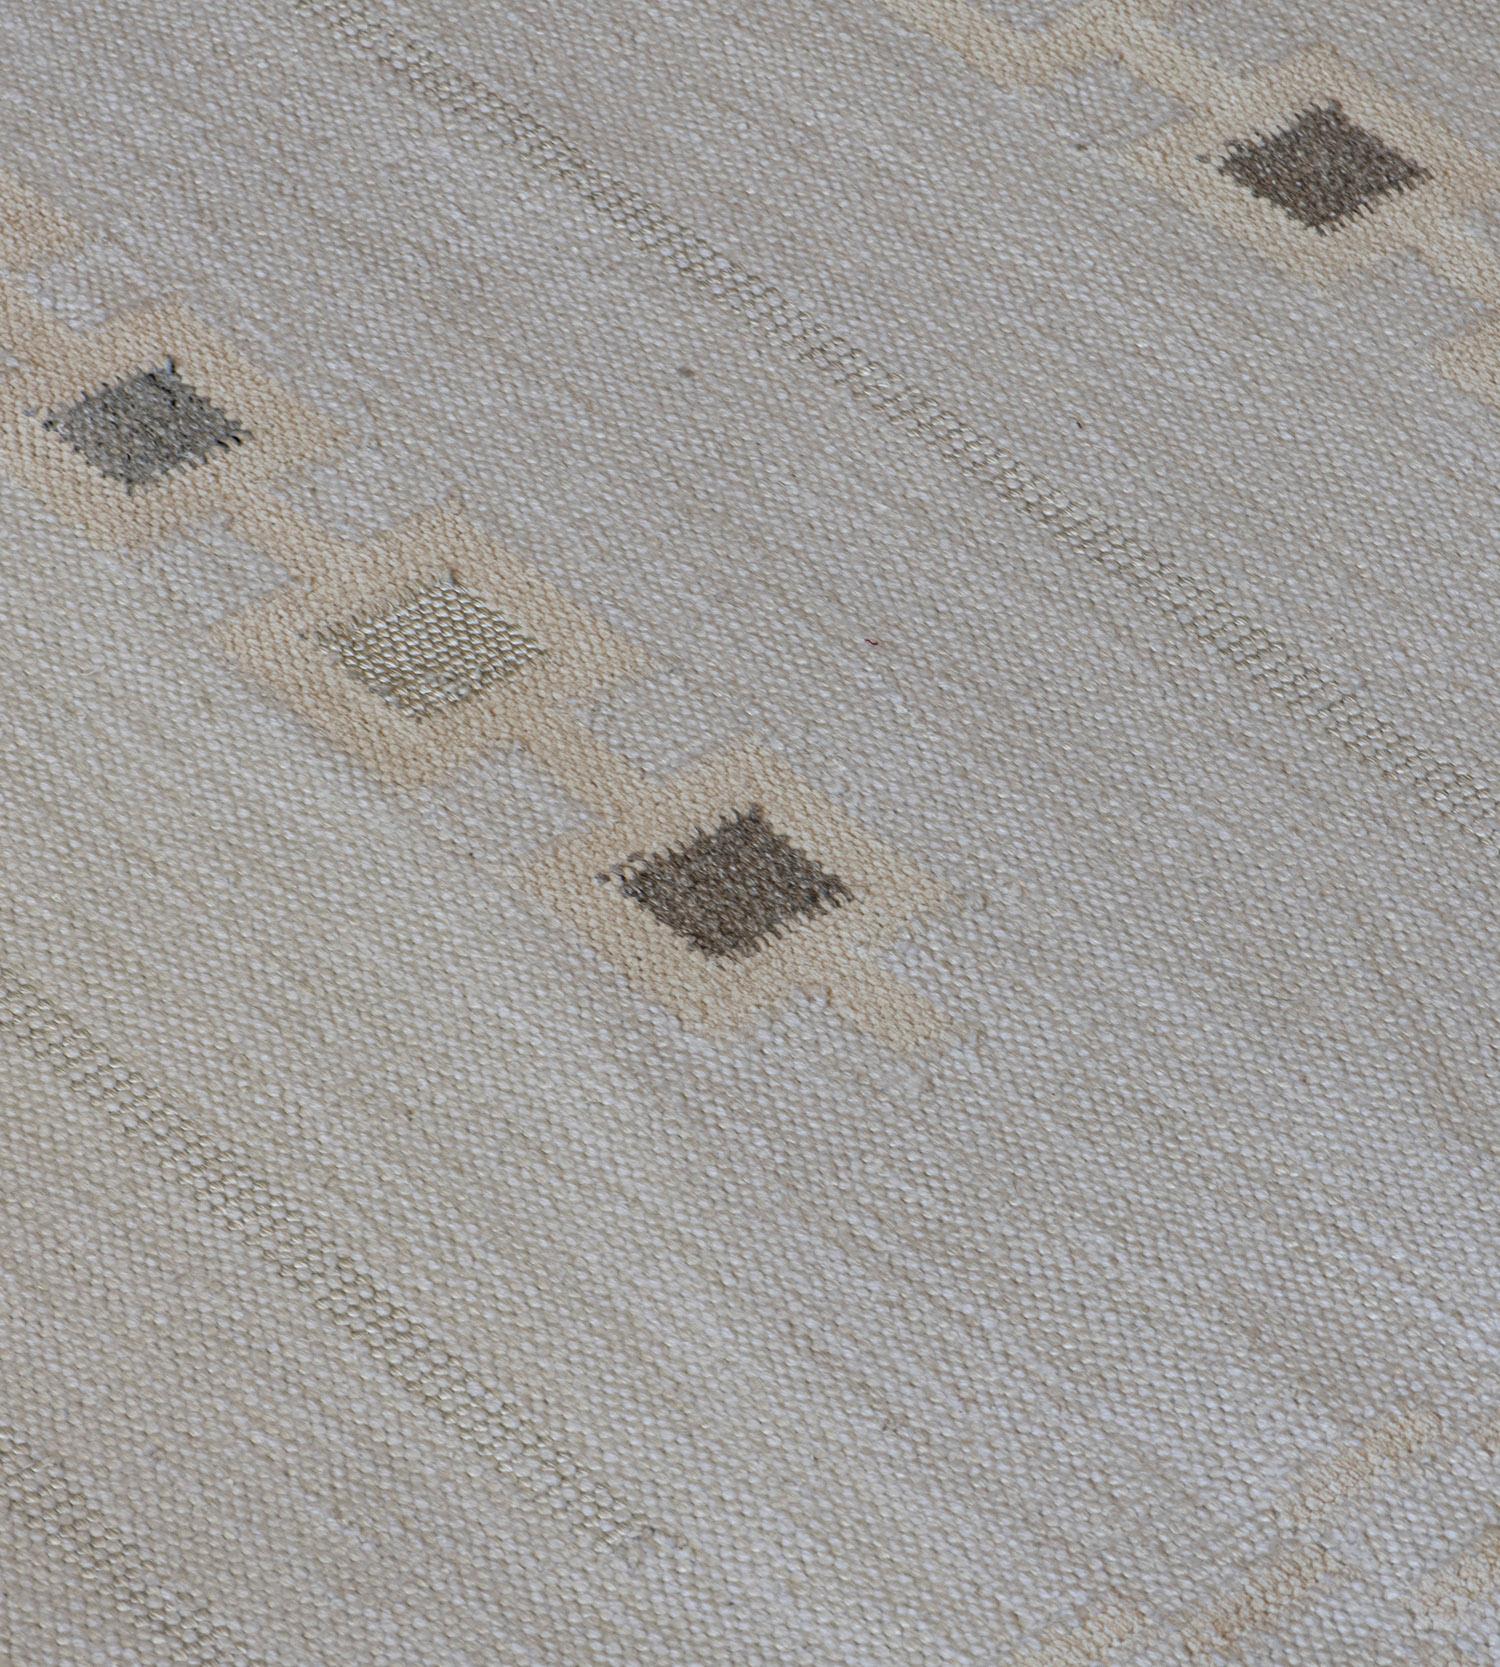 Die moderne schwedische Mansour-Kollektion ist in erster Linie von alten schwedischen Flachgewebe-Teppichen inspiriert, deren geometrische Muster auch im 21. Jahrhundert noch aktuell sind. In der Kollektion werden verschiedene Flachgewebetechniken